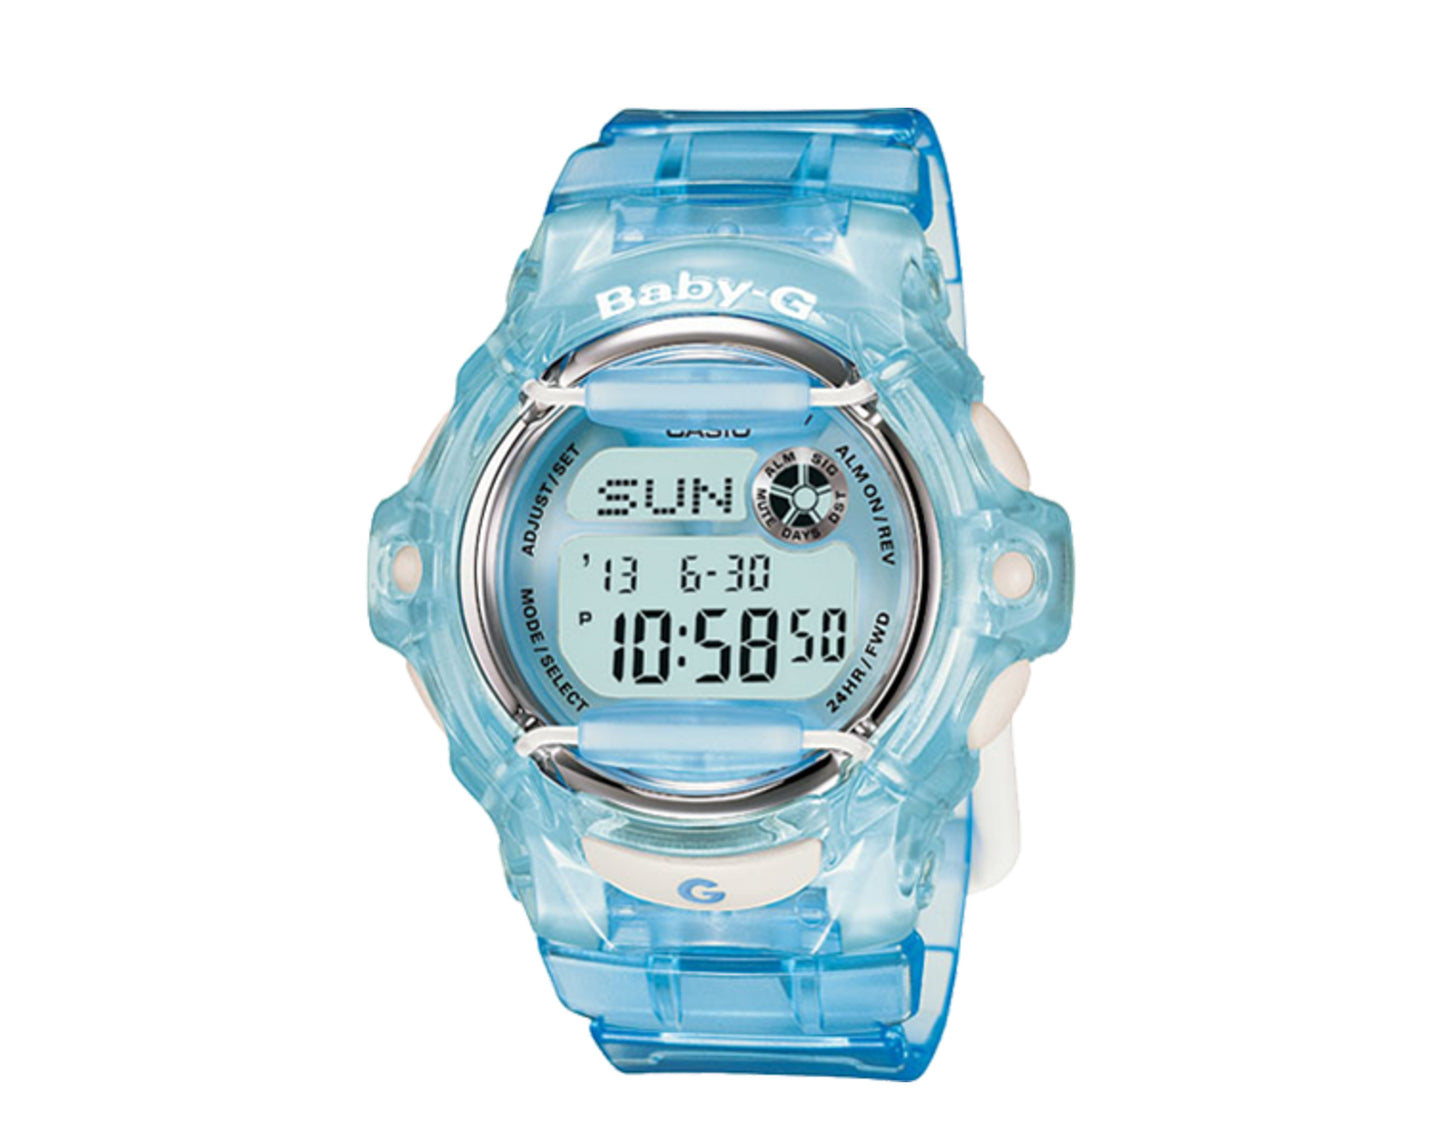 Casio G-Shock Baby-G BG169 Digital Resin Clear Blue Women's Watch BG169R-2